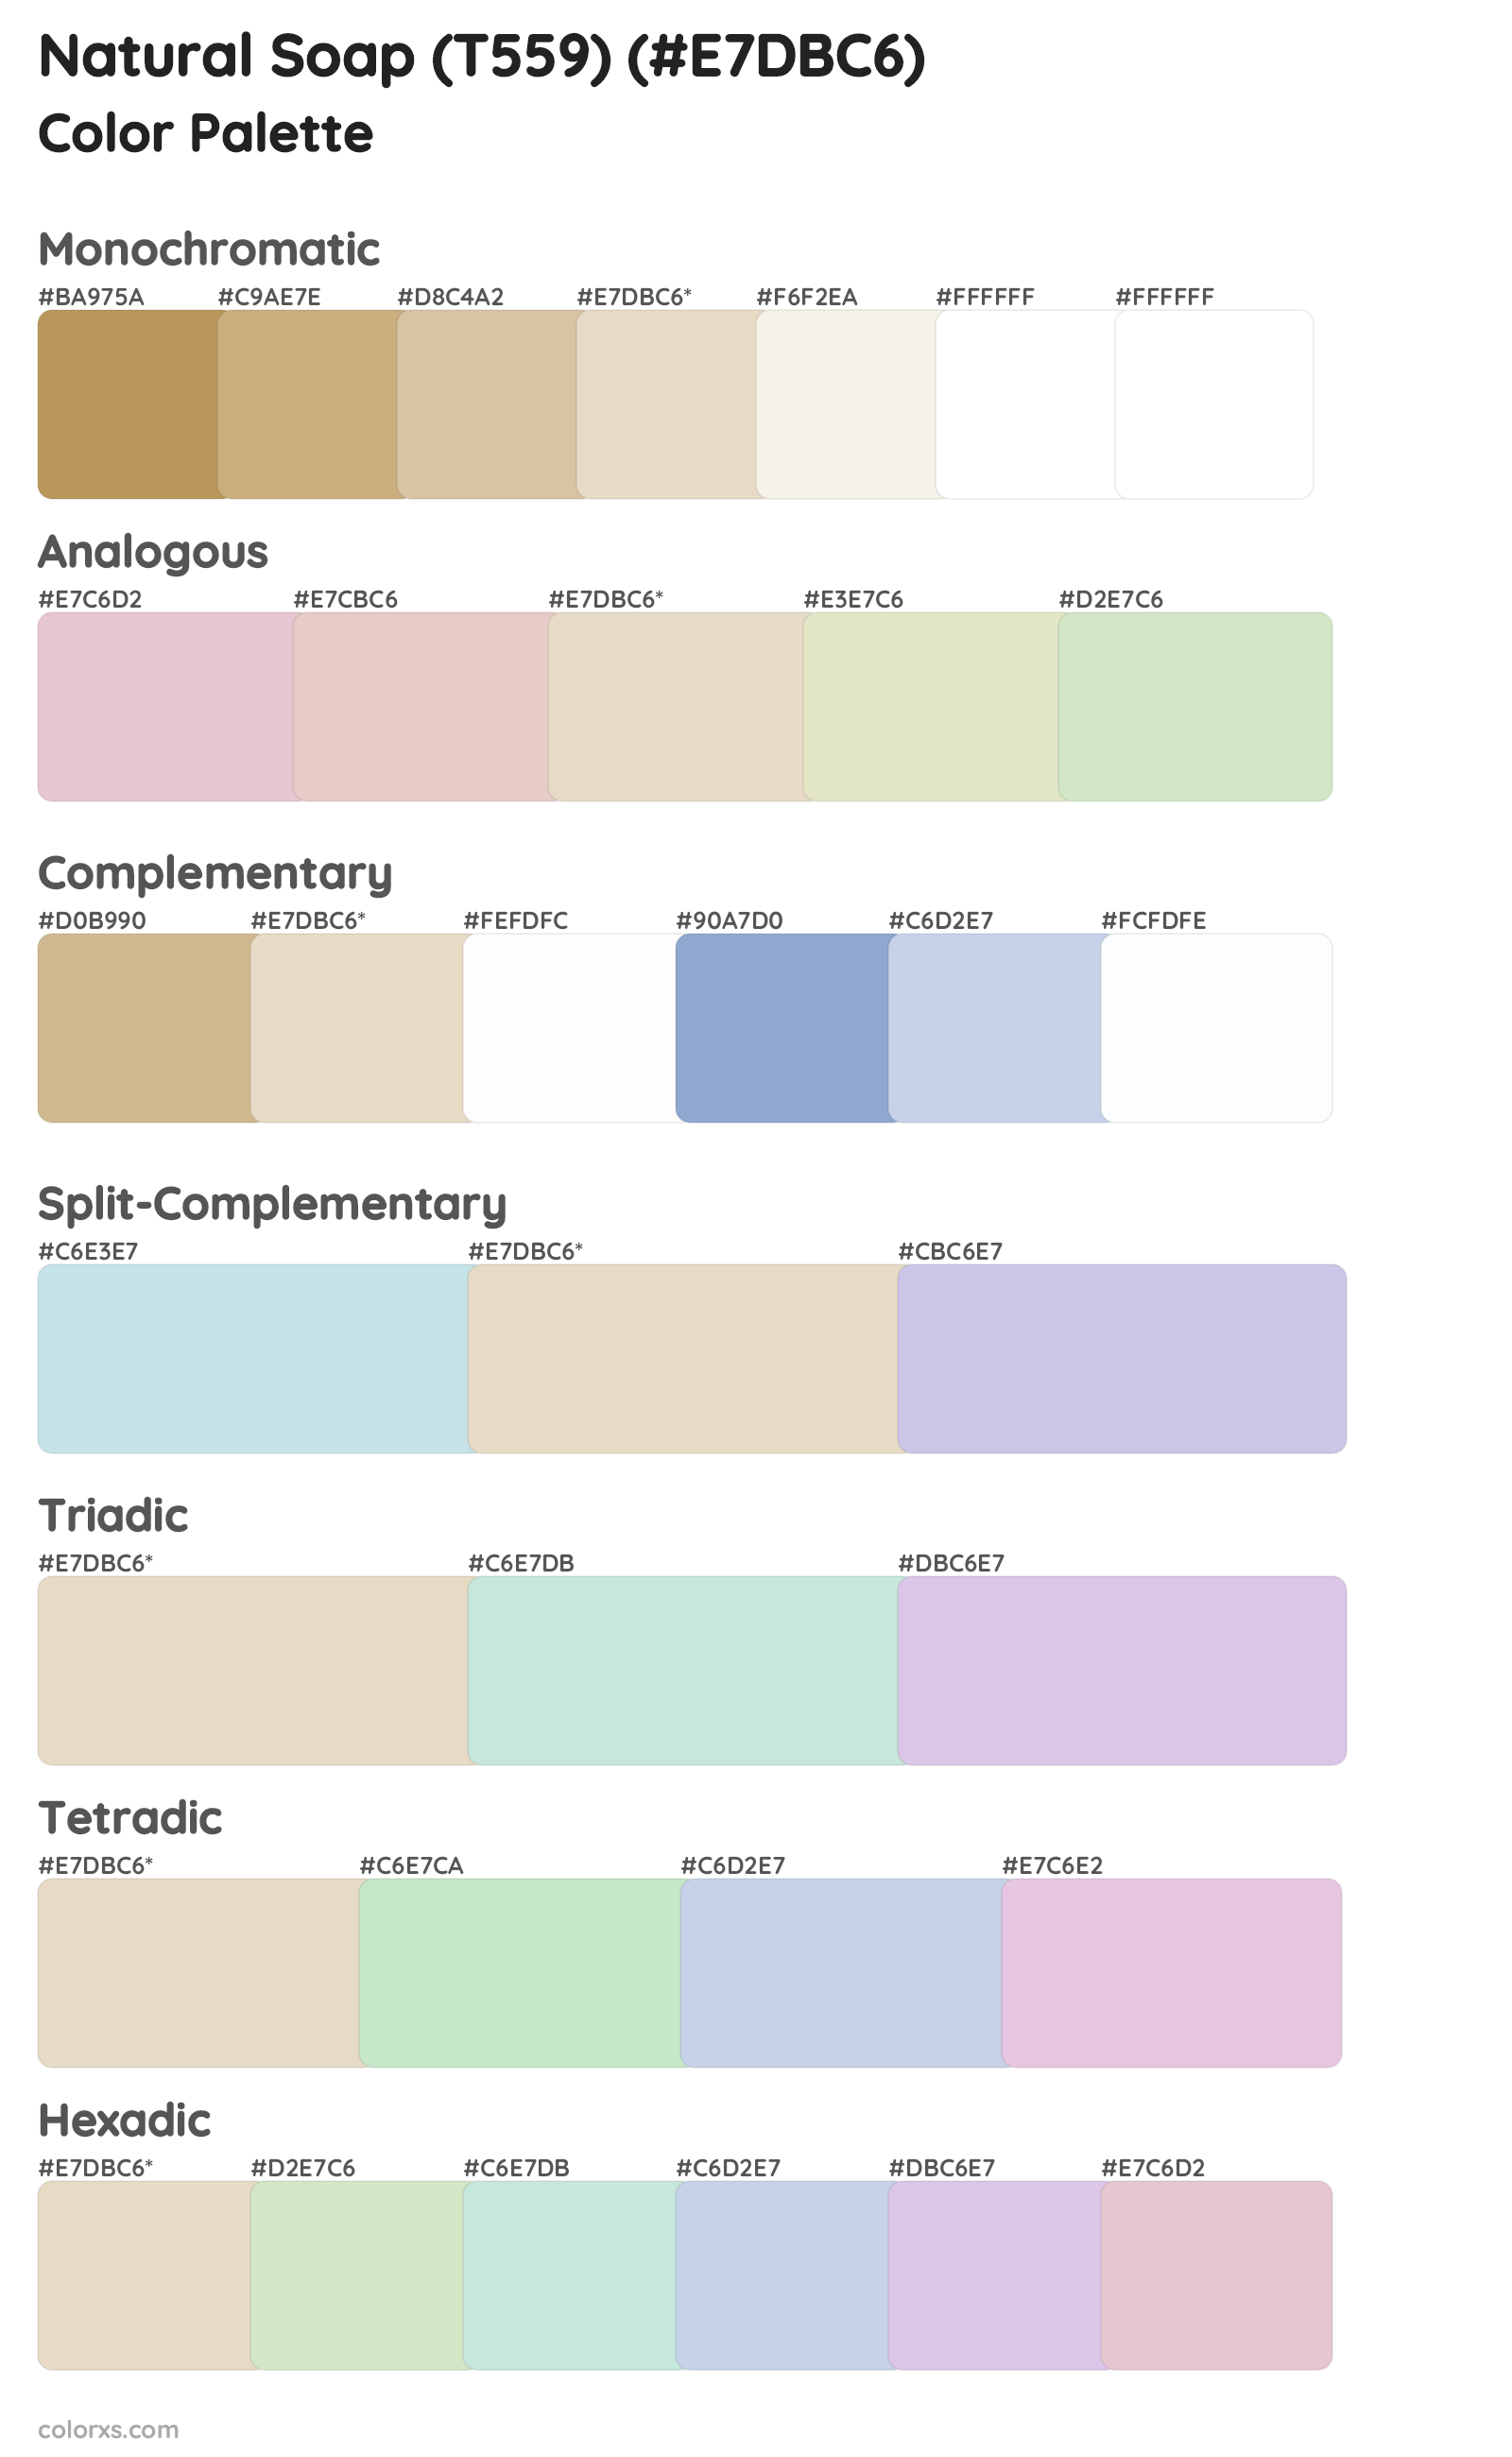 Natural Soap (T559) Color Scheme Palettes